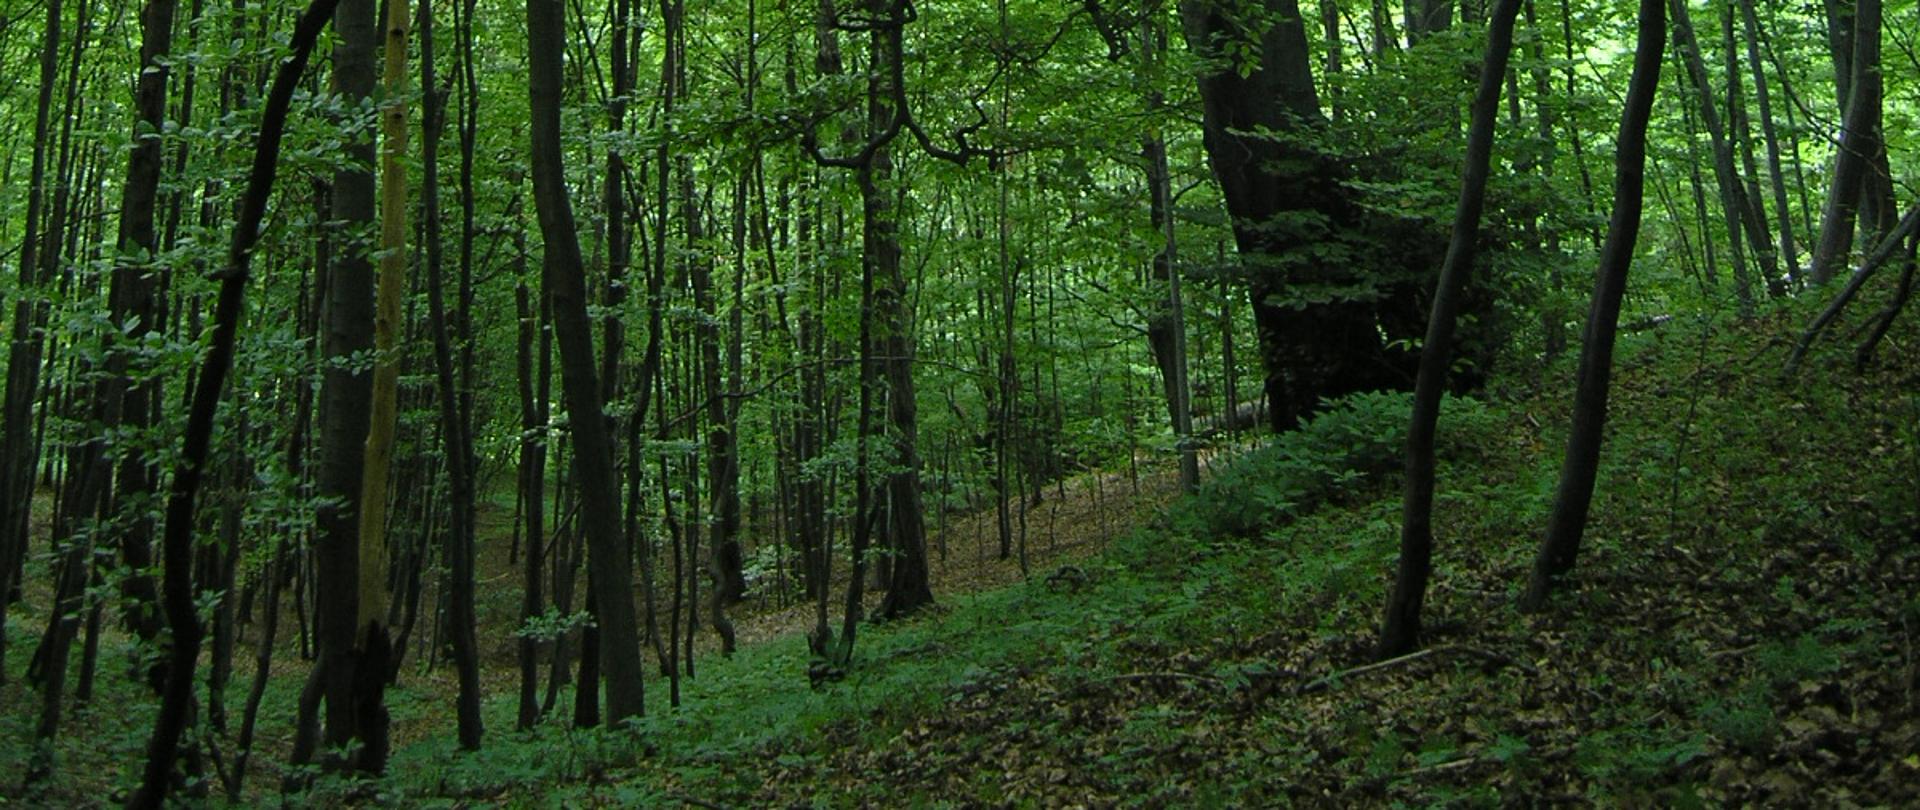 Zdjęcie przedstawia fragment lasu